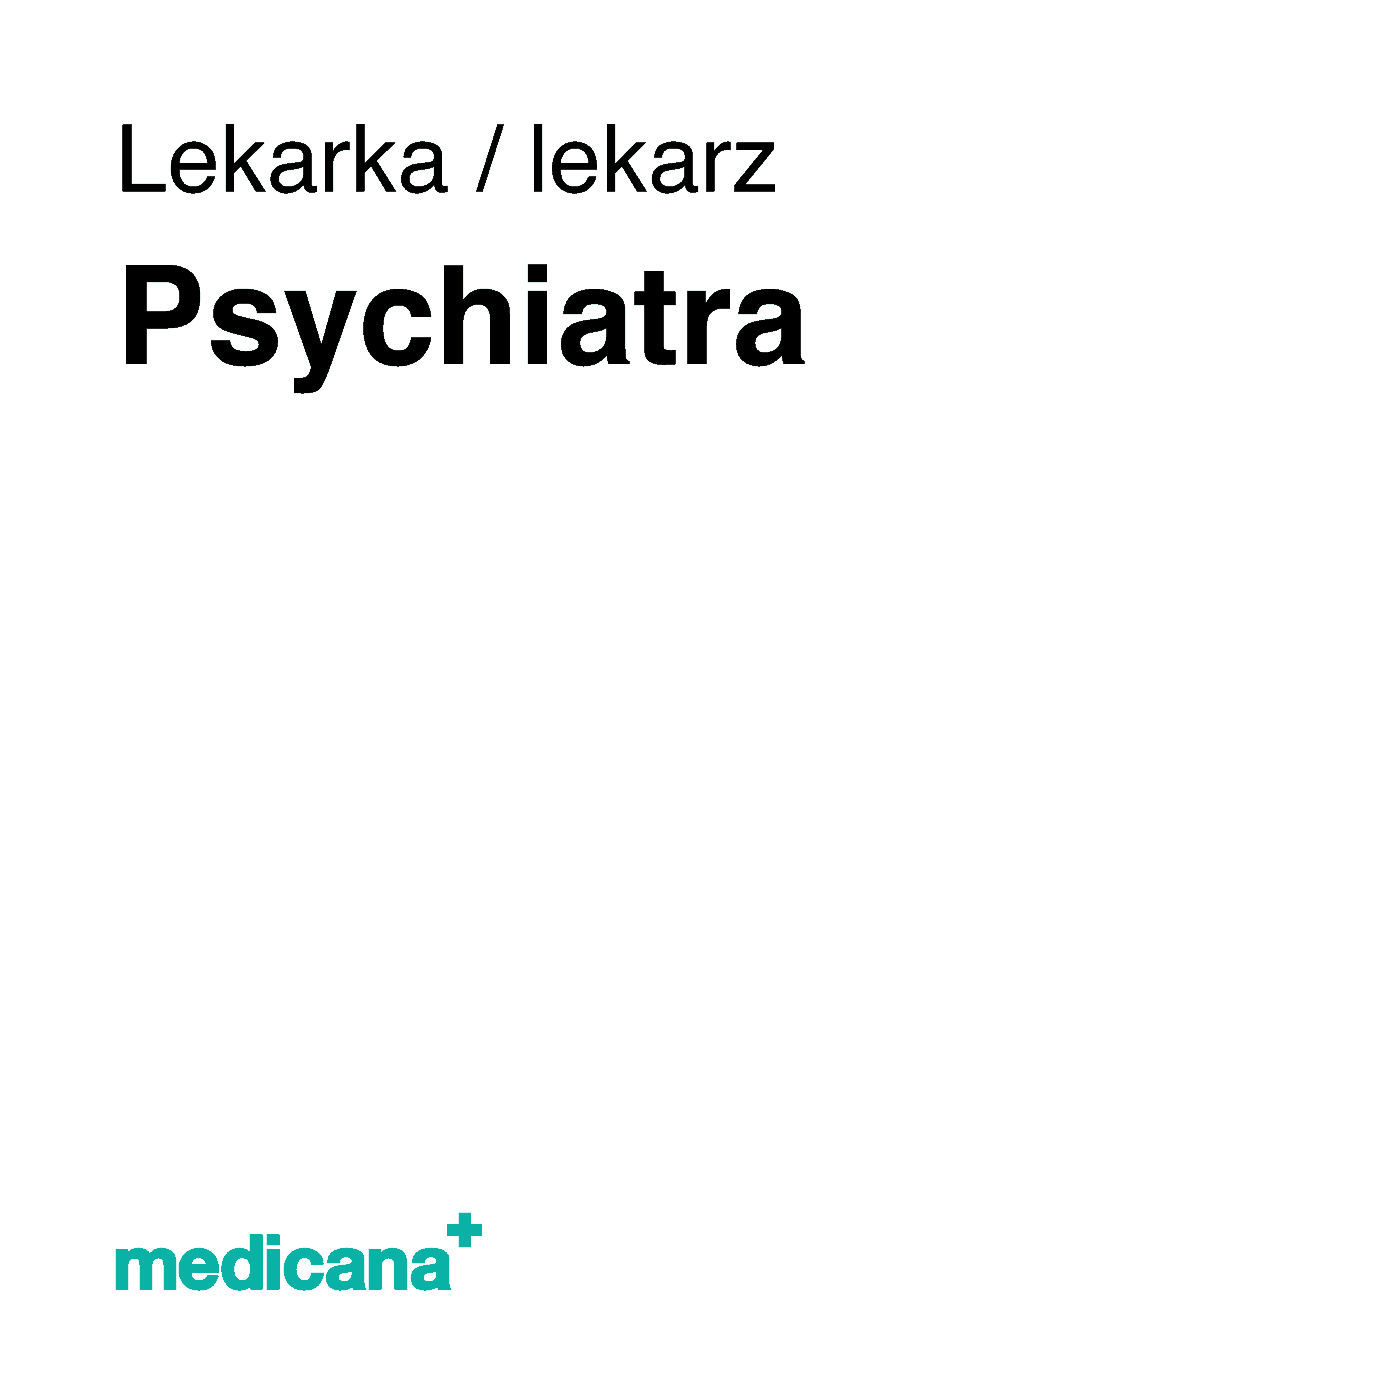 Ilustracja, białe tło i czarny napis w lewym górnym narożniku "Lekarka, lekarz Psychiatra" i logo Medicana Centrum Terapii Medyczna Marihuana w lewym dolnym rogu.